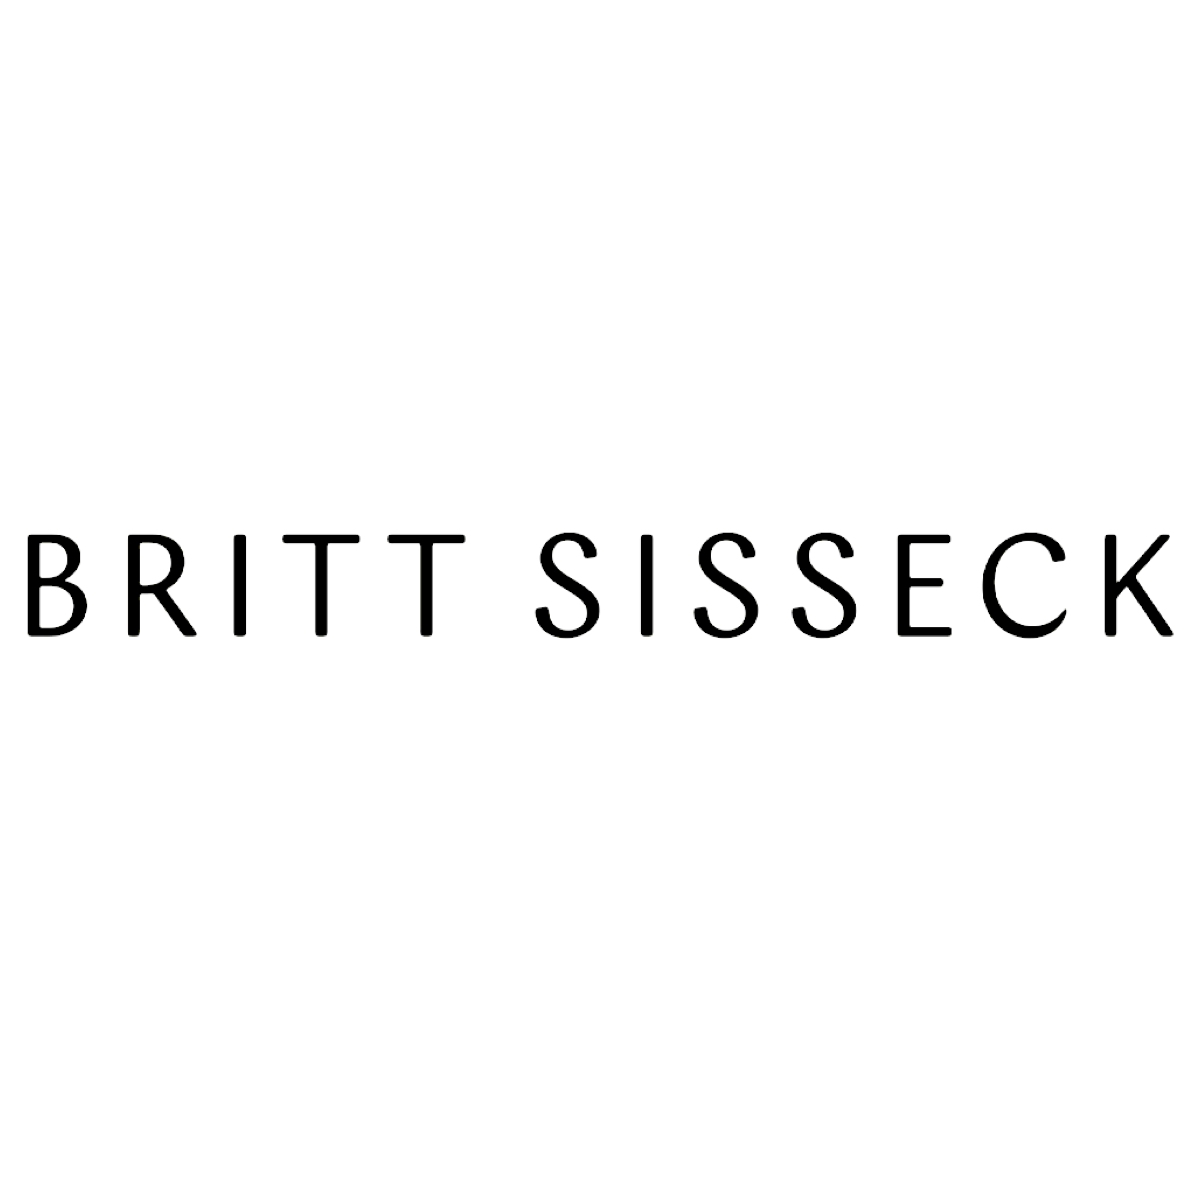 Britt Sisseck